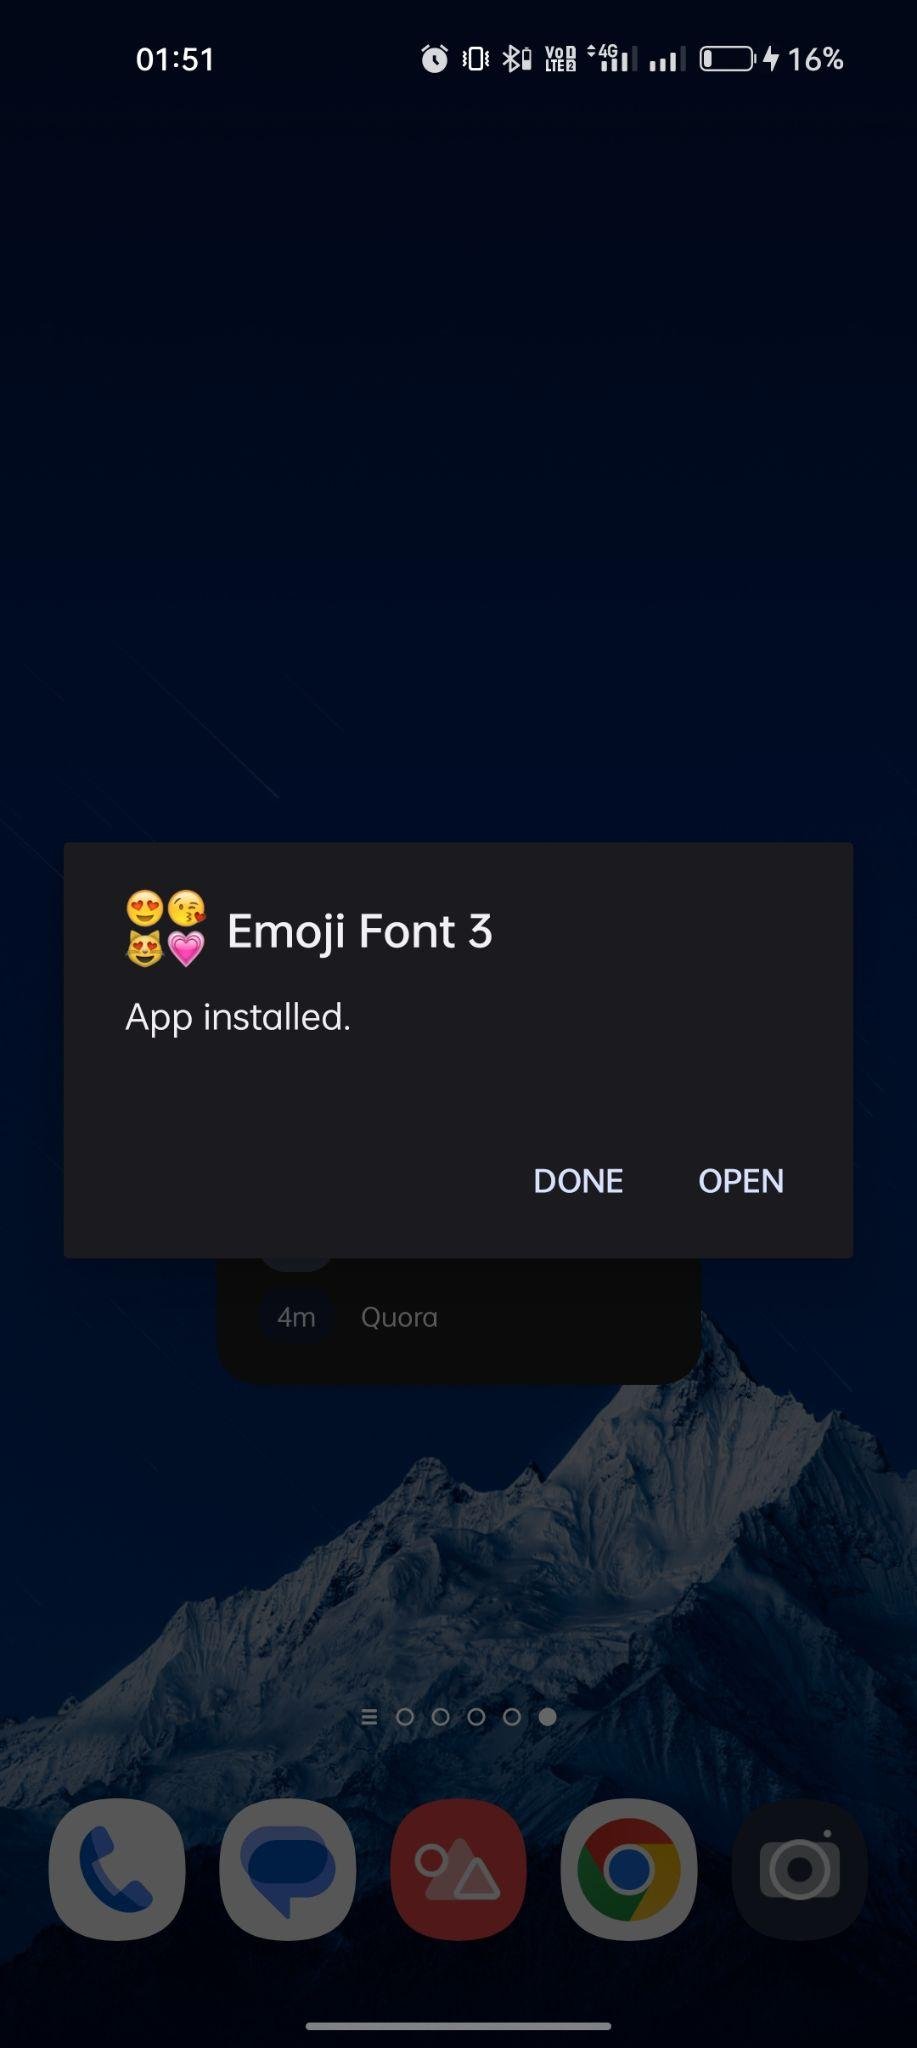 Emoji Font 3 apk installed